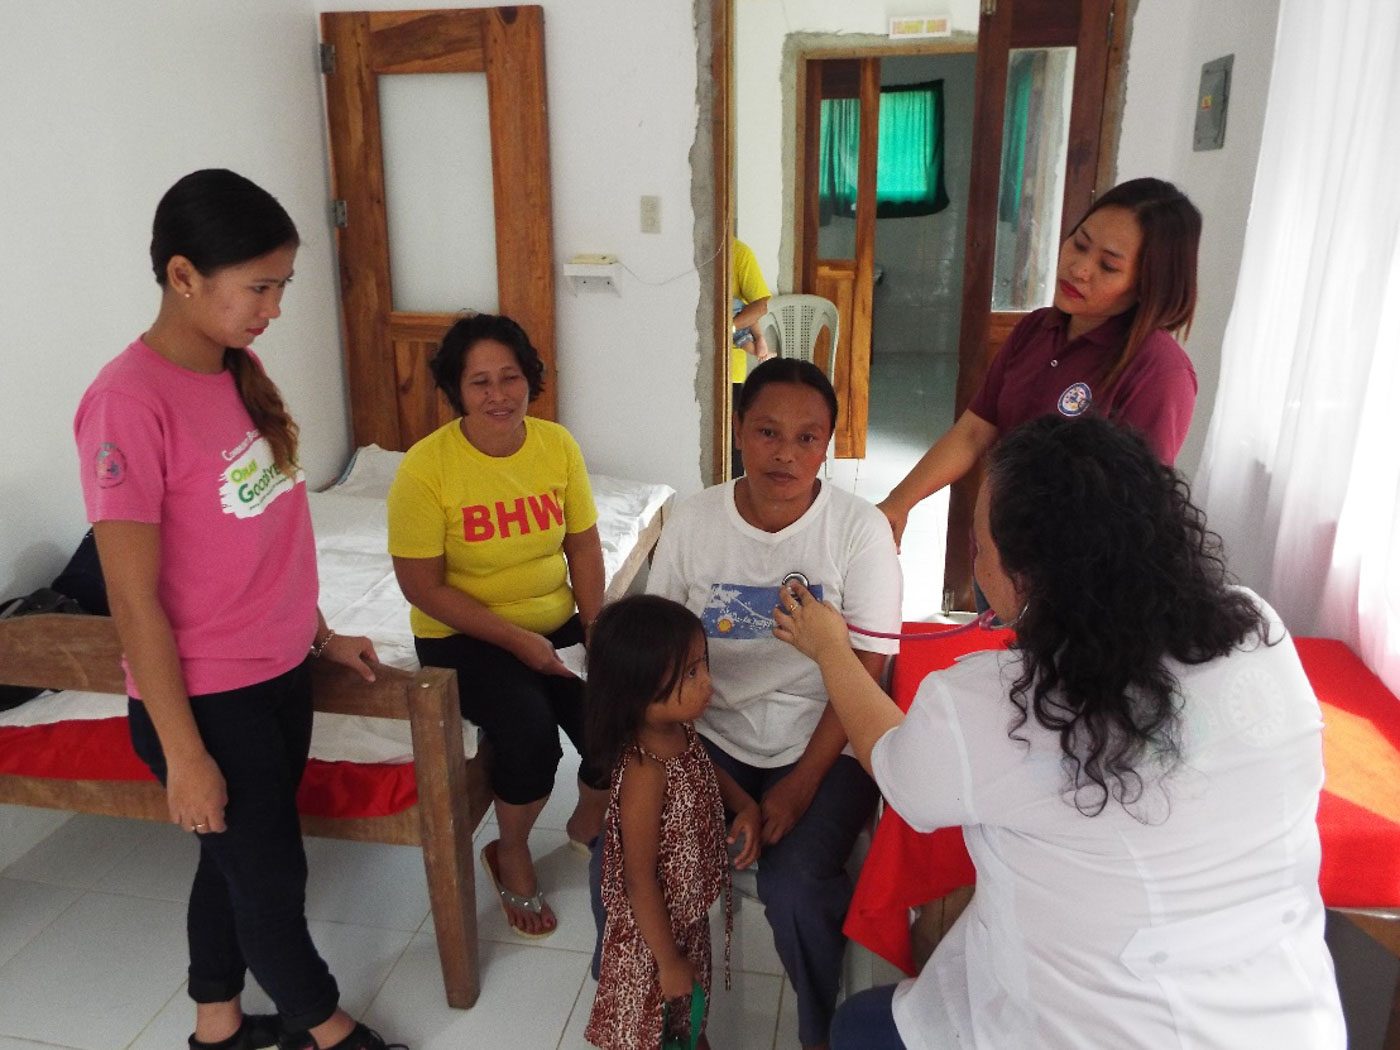 In Del Carmen, Surigao del Norte, barangays are rewarded for being healthy